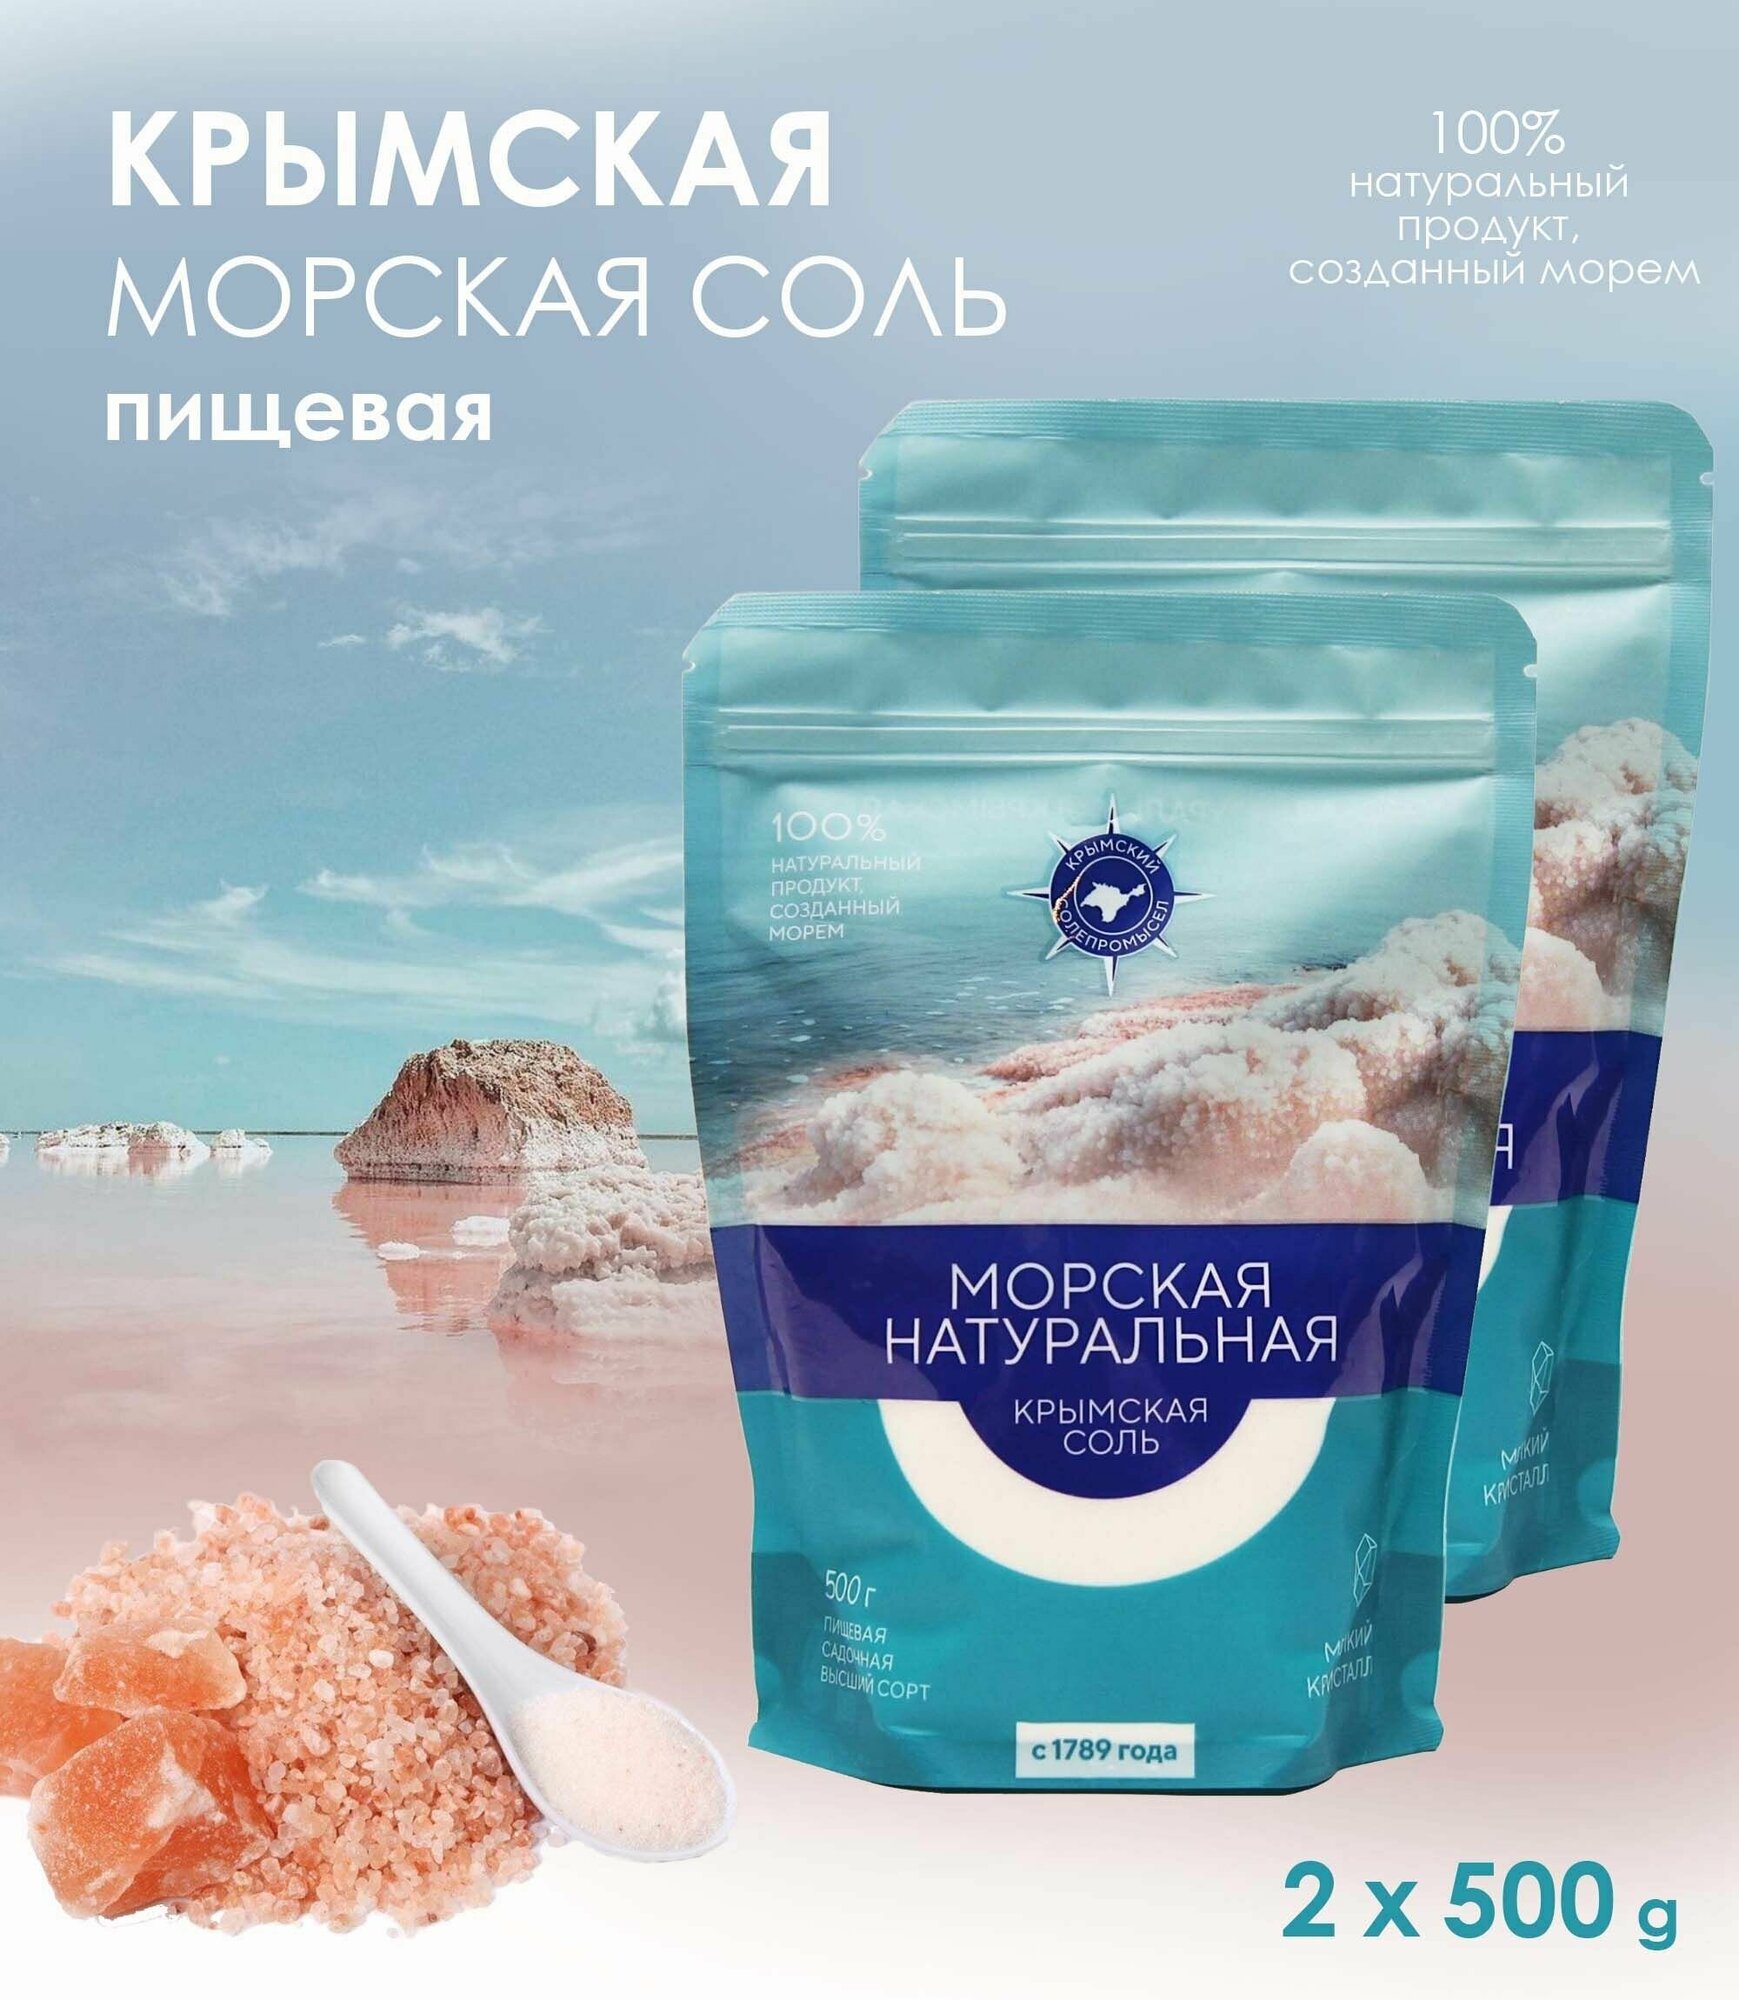 Крымская морская соль, пищевая, 100% натуральная, высший сорт, 2 уп. по 500 г